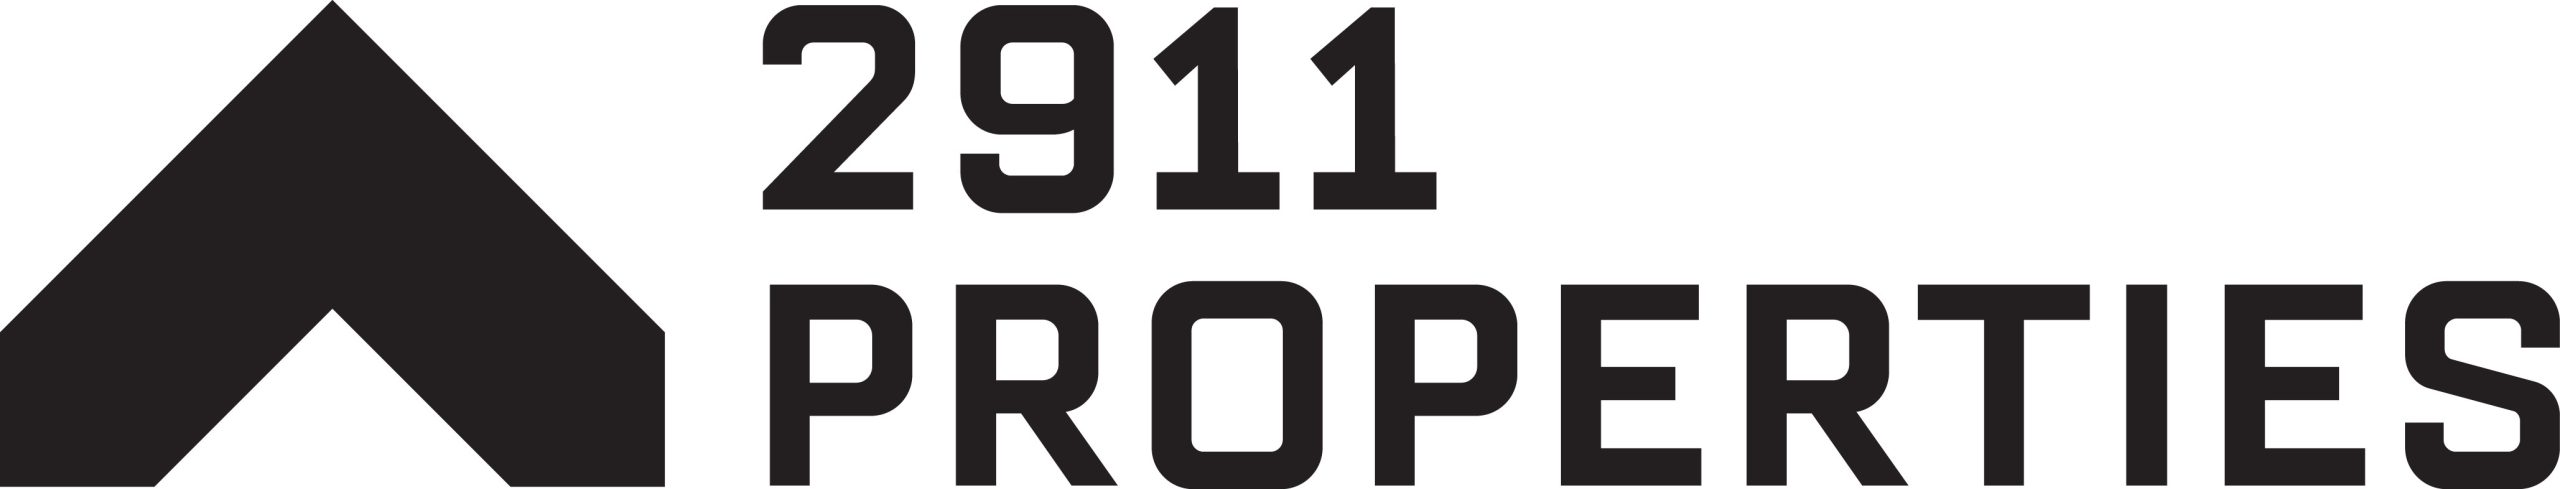 2911 Properties logo